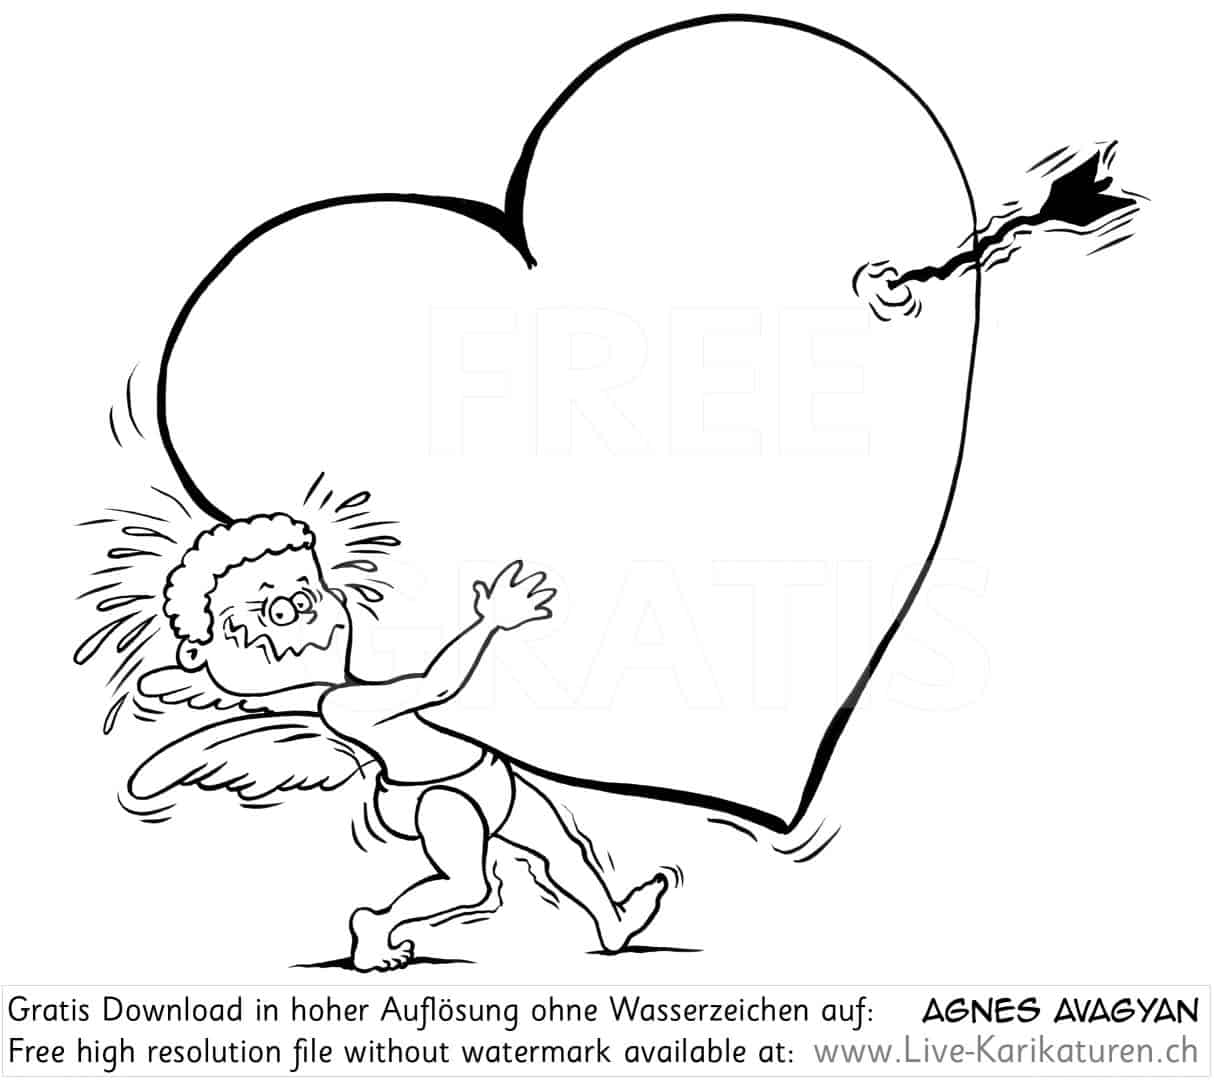 Herz Pfeil Engelchen Amor Valentinstag Schreck Pfeilschuss Ueberraschung verliebt Liebe Agnes Karikaturen gratis free Clipart Comic Cartoon Zeichnung bw, Watermark UHD UltraHD